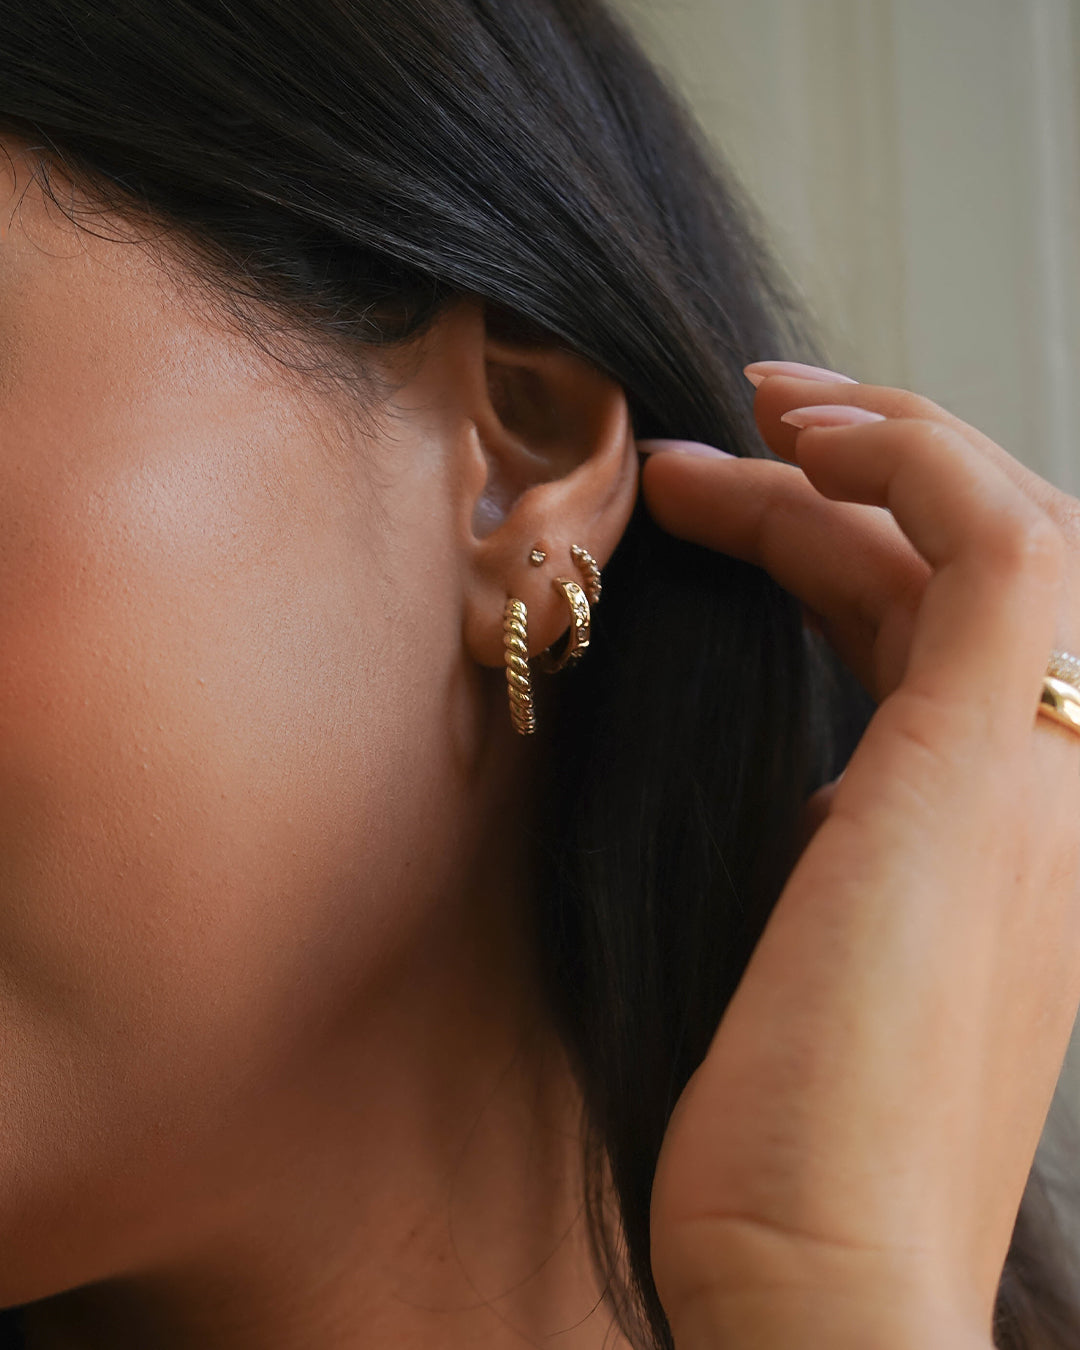 14K Gold Twist Huggie Earrings